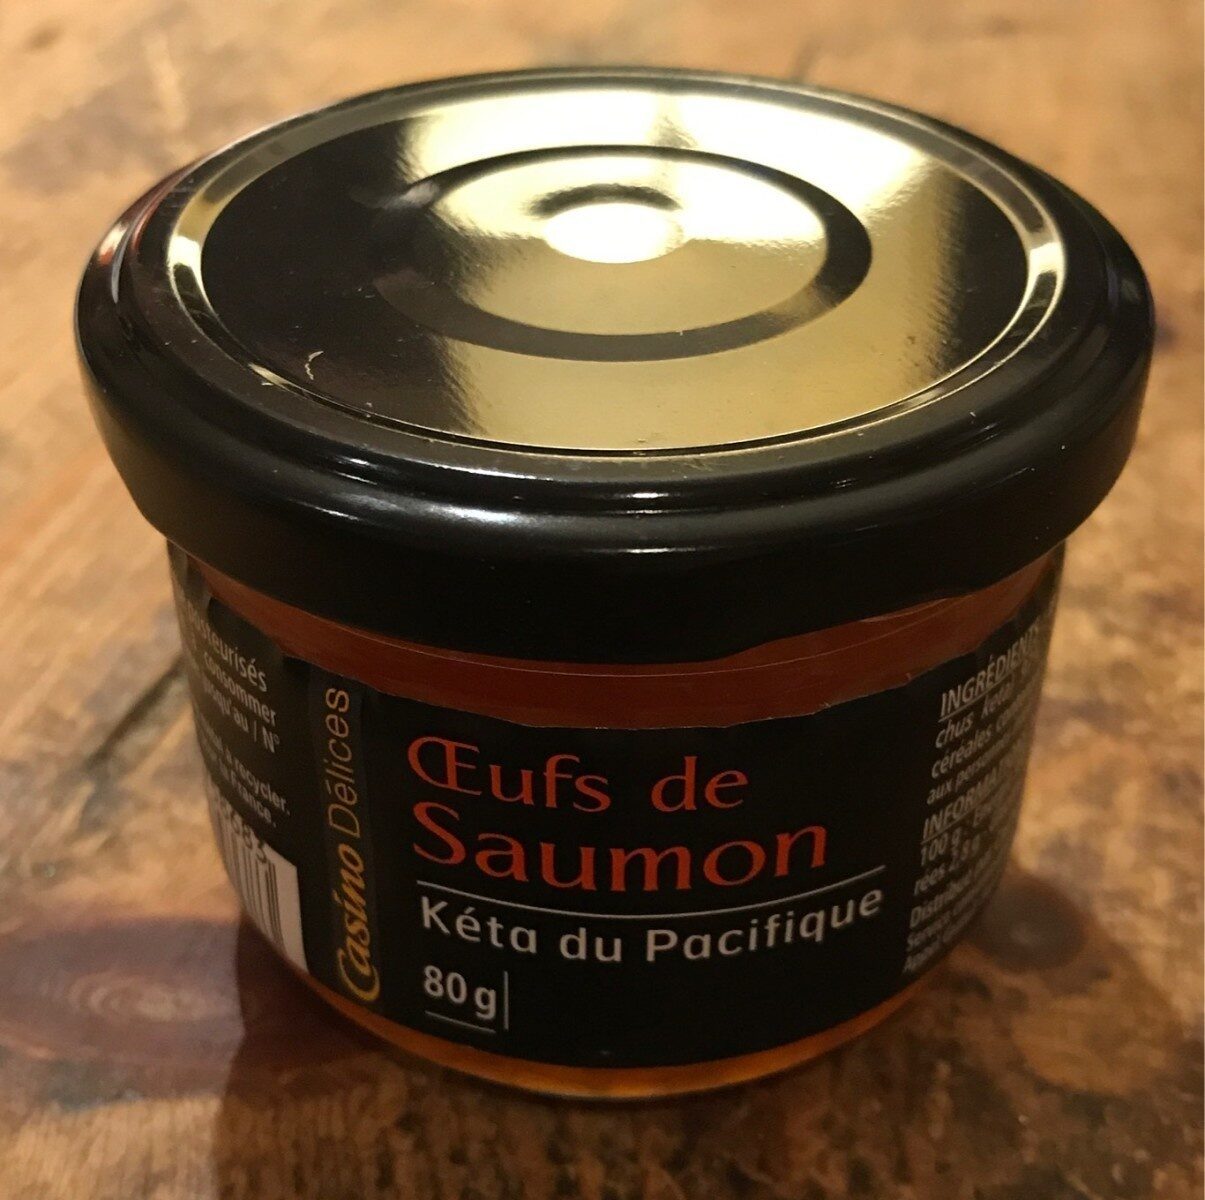 Oeufs de Saumon - Product - fr